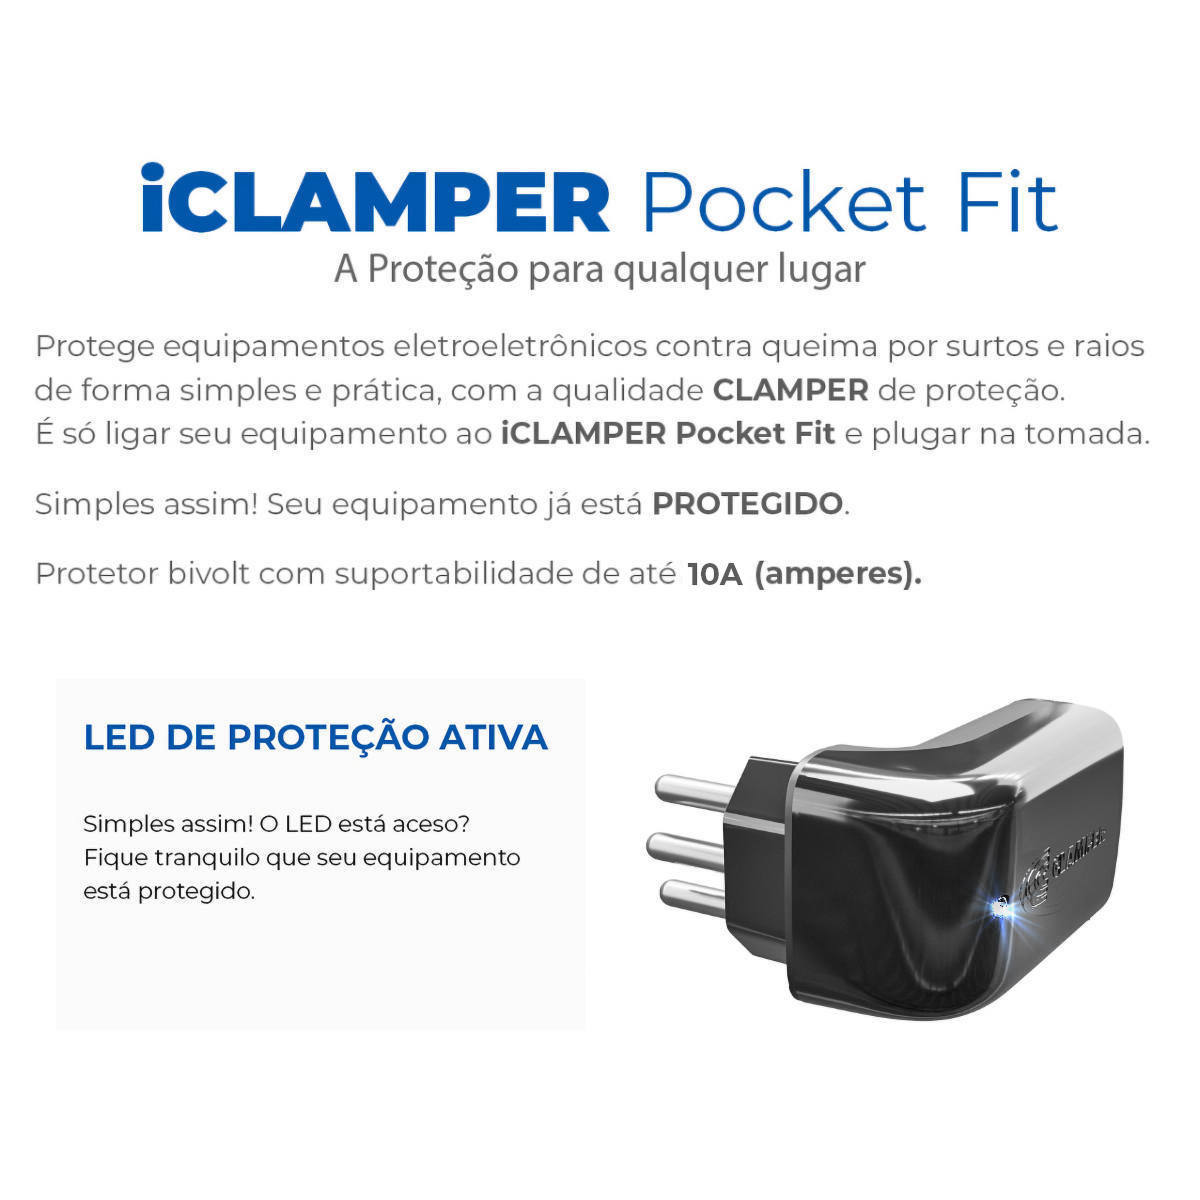 iClamper Pocket Fit 3 Pinos 10A DPS Proteção contra Raios e Surtos Elétricos Mesmo Sem Aterramento Clamper Preto